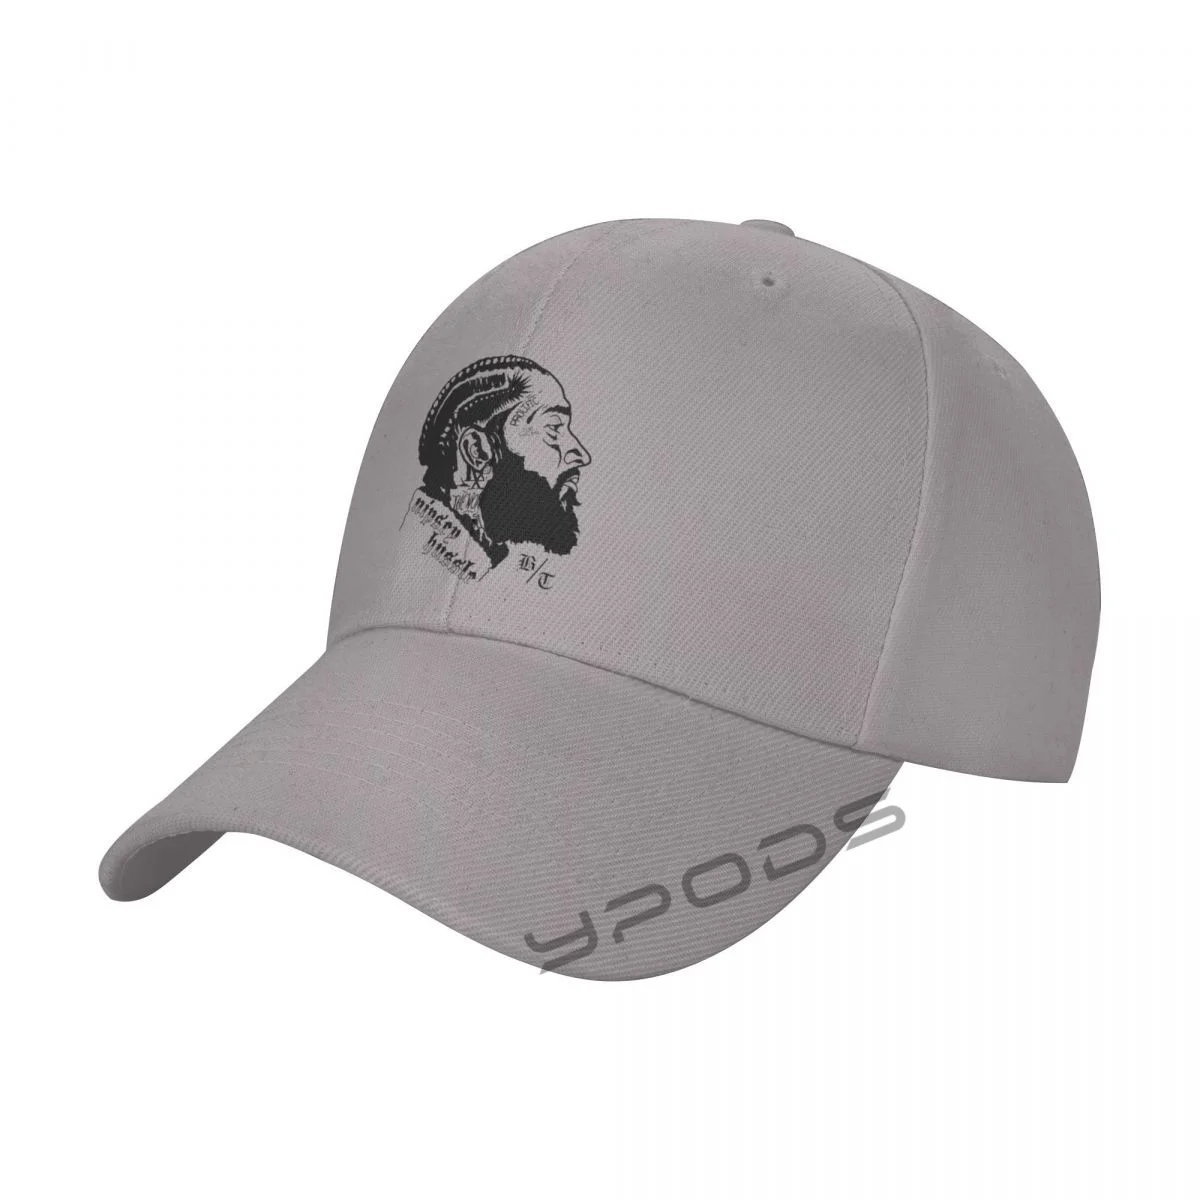 

Men's Baseball Caps Nipsey Hussle Women Summer Snapback Cap Adjustable Outdoor Sport Sun Hat